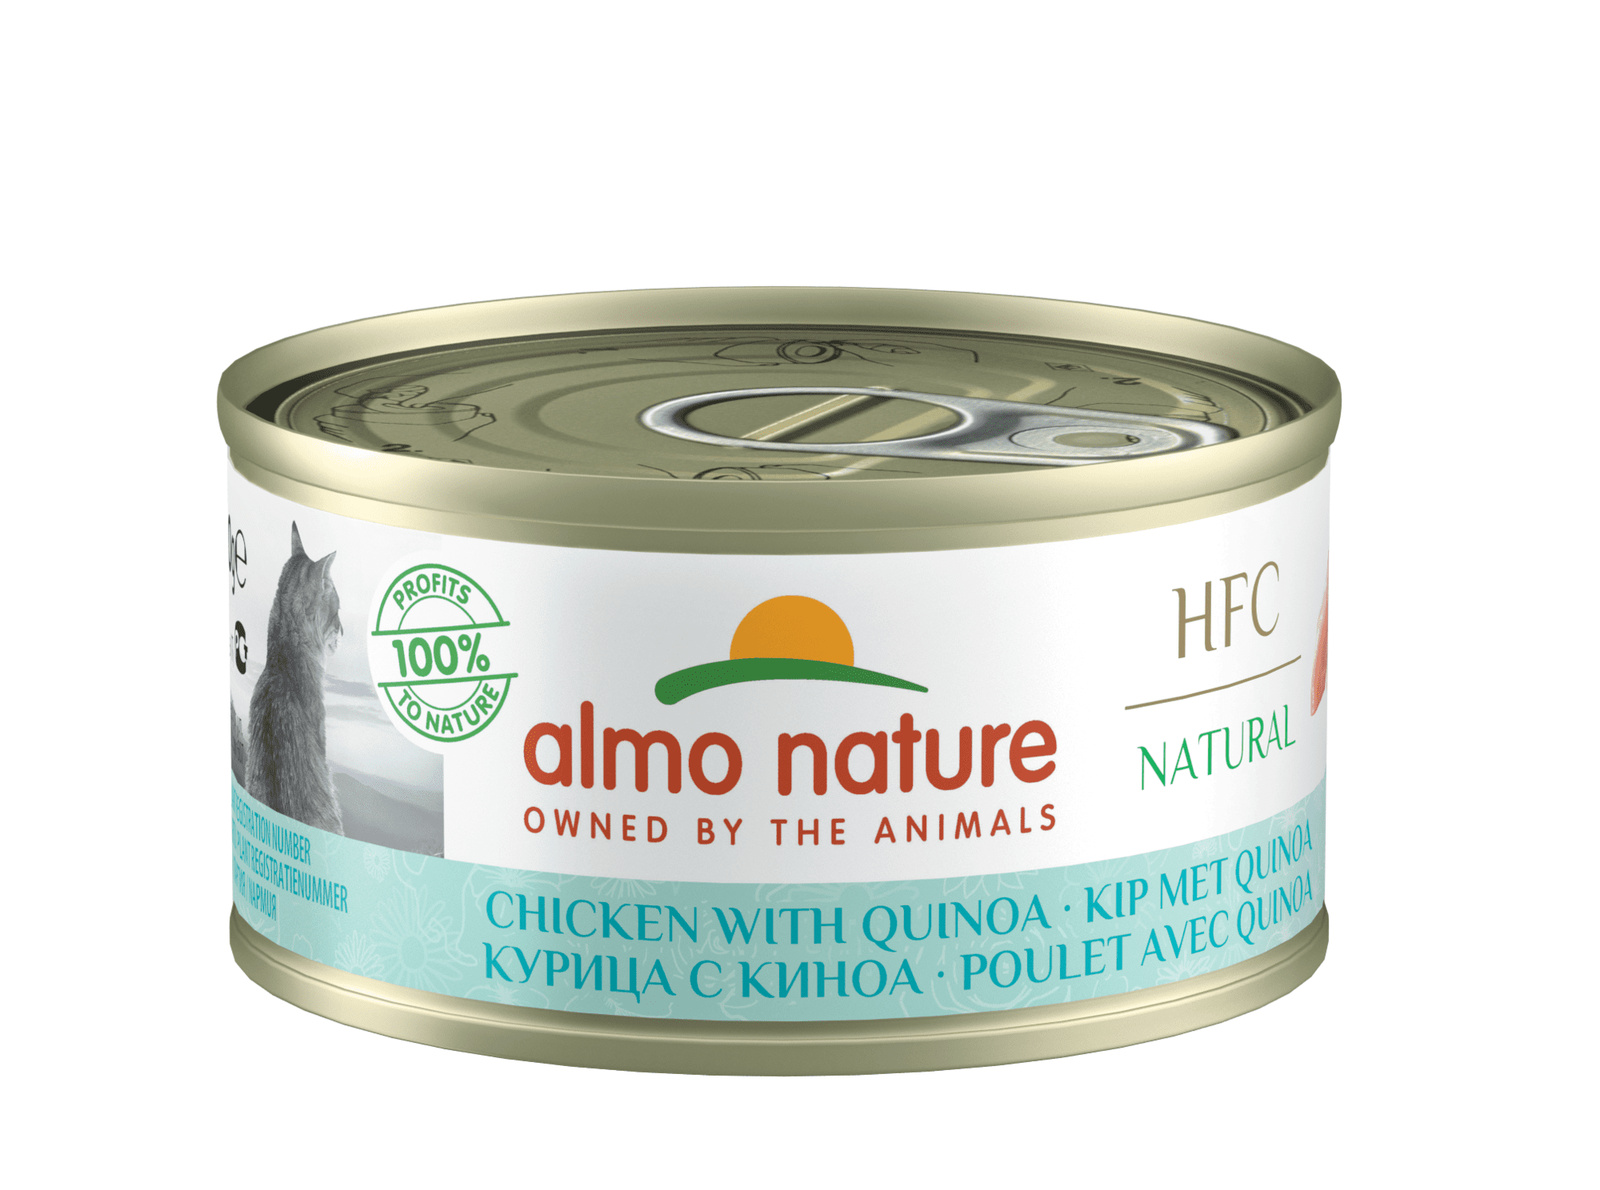 Almo Nature консервы Almo Nature консервы низкокалорийные для кошек, с курицей и киноа (70 г) консервы для кошек almo nature legend с курицей и сыром 75% 70 г